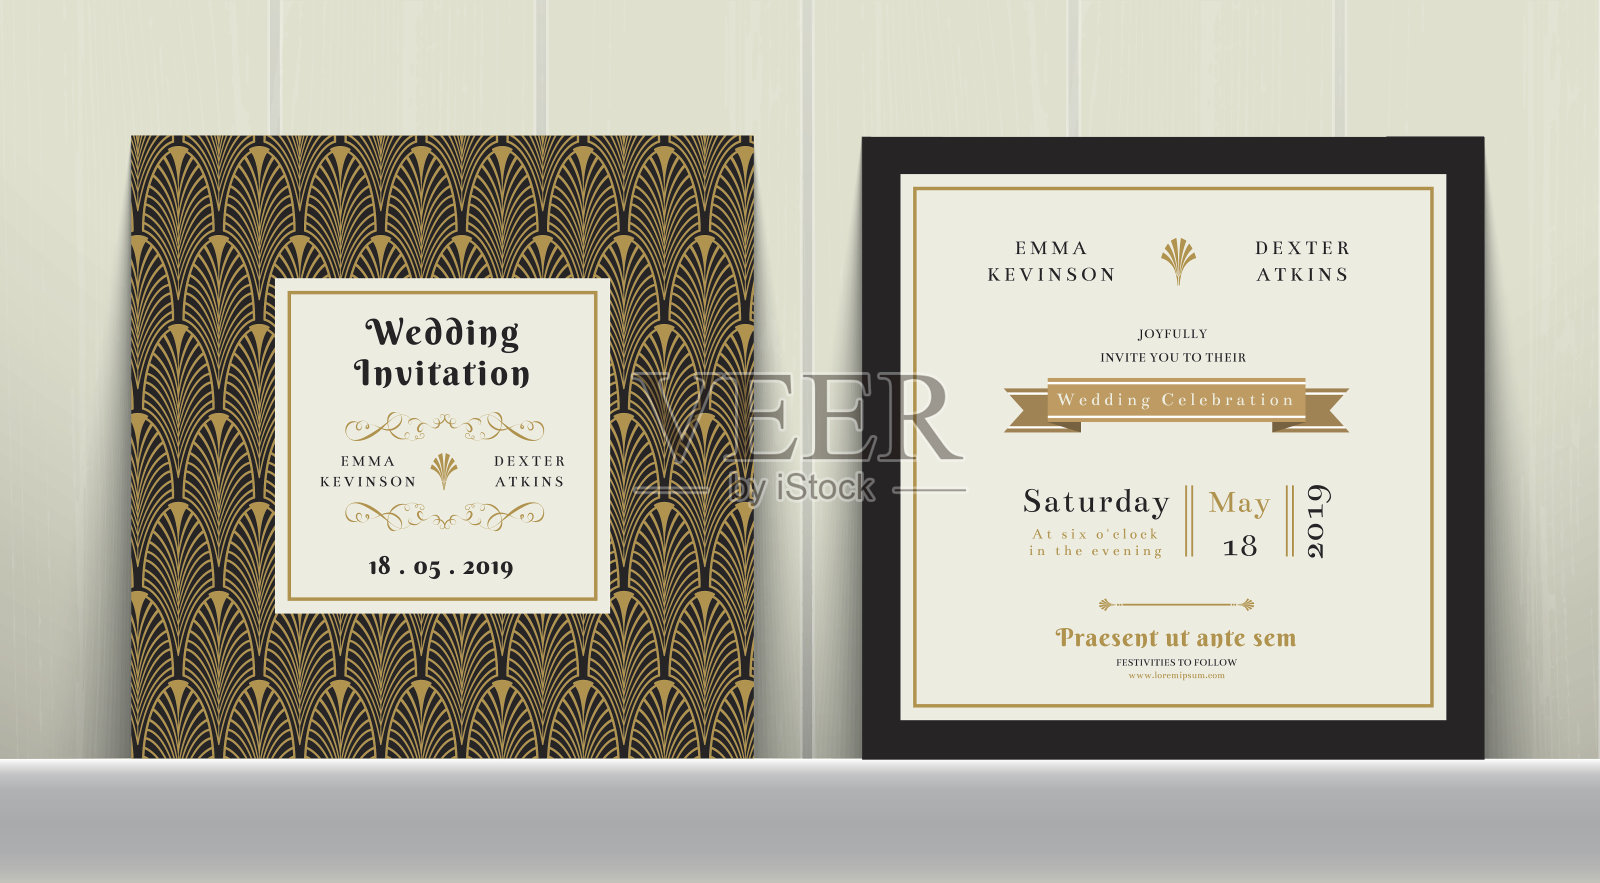 装饰艺术婚礼邀请卡在金色和黑色的颜色设计模板素材